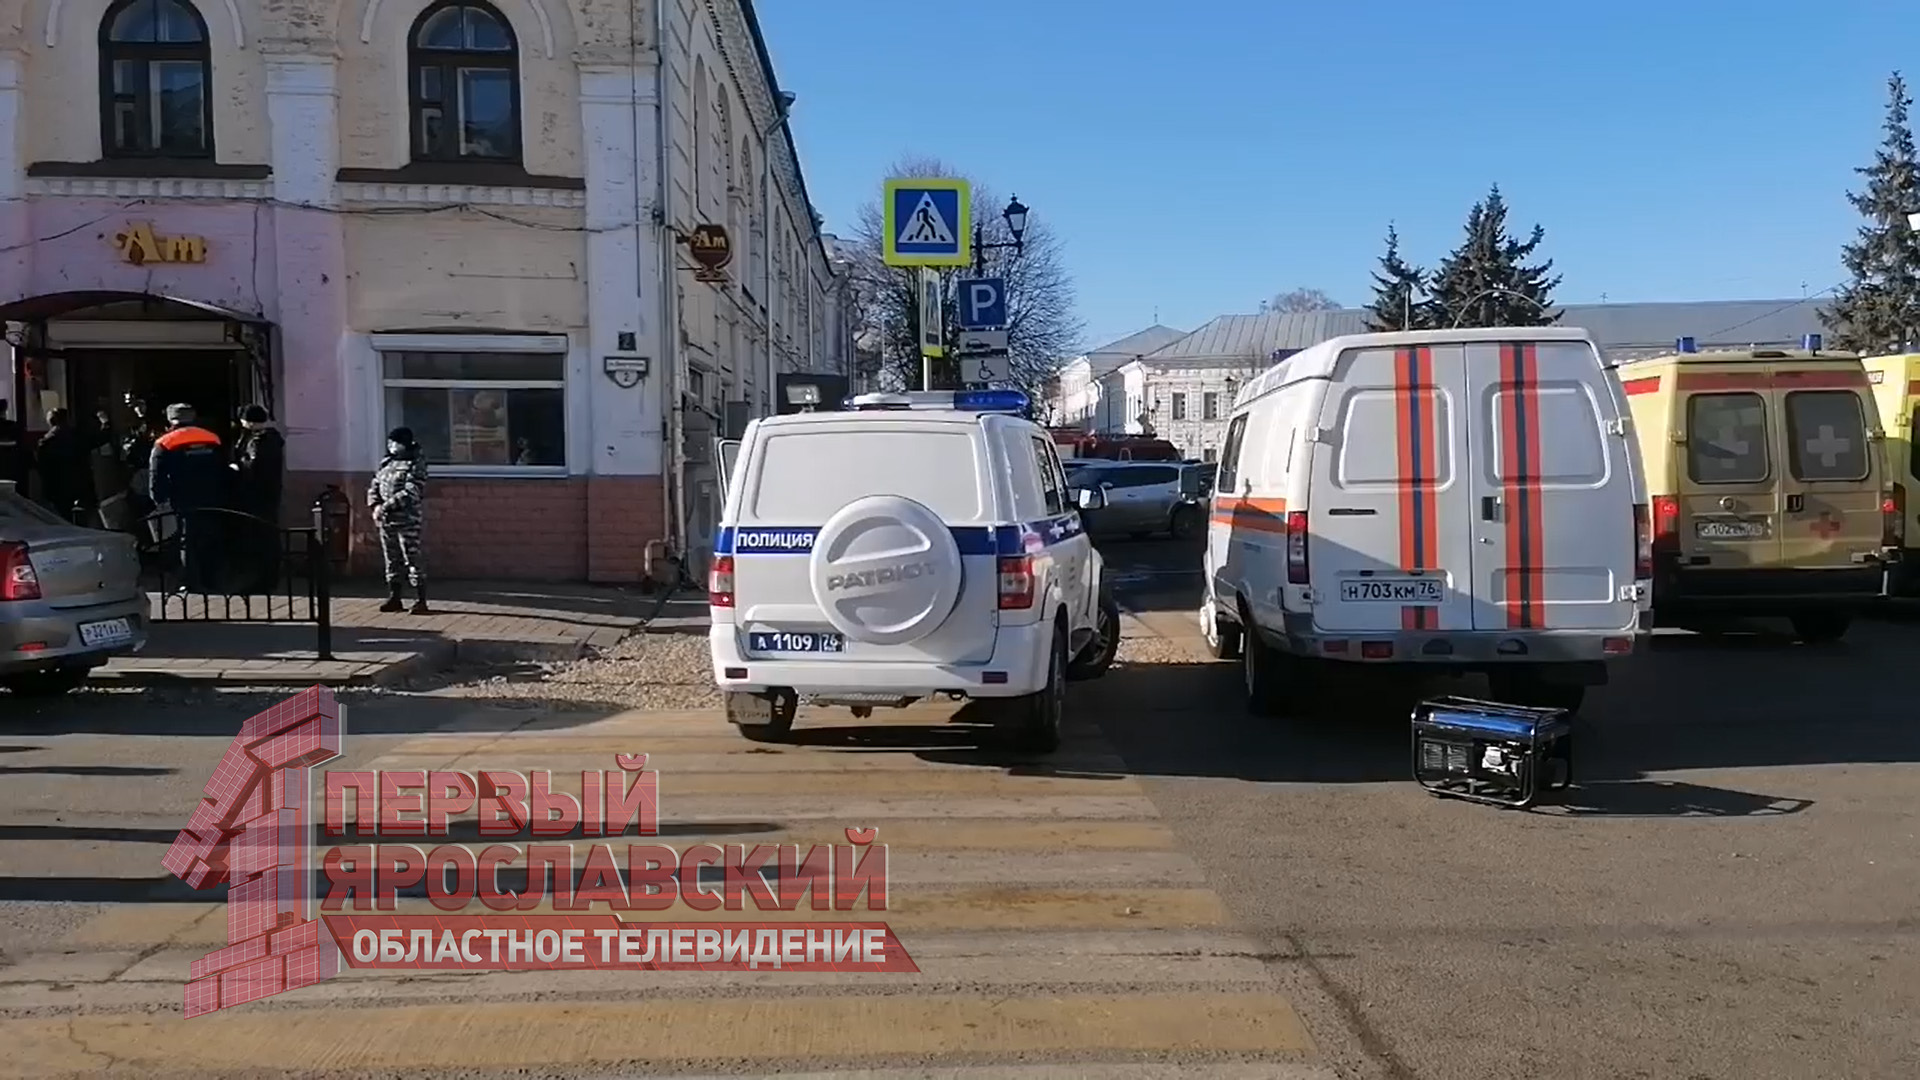 «Обрушились перекрытия»: очевидцы сообщают о ЧП в центре Ярославля